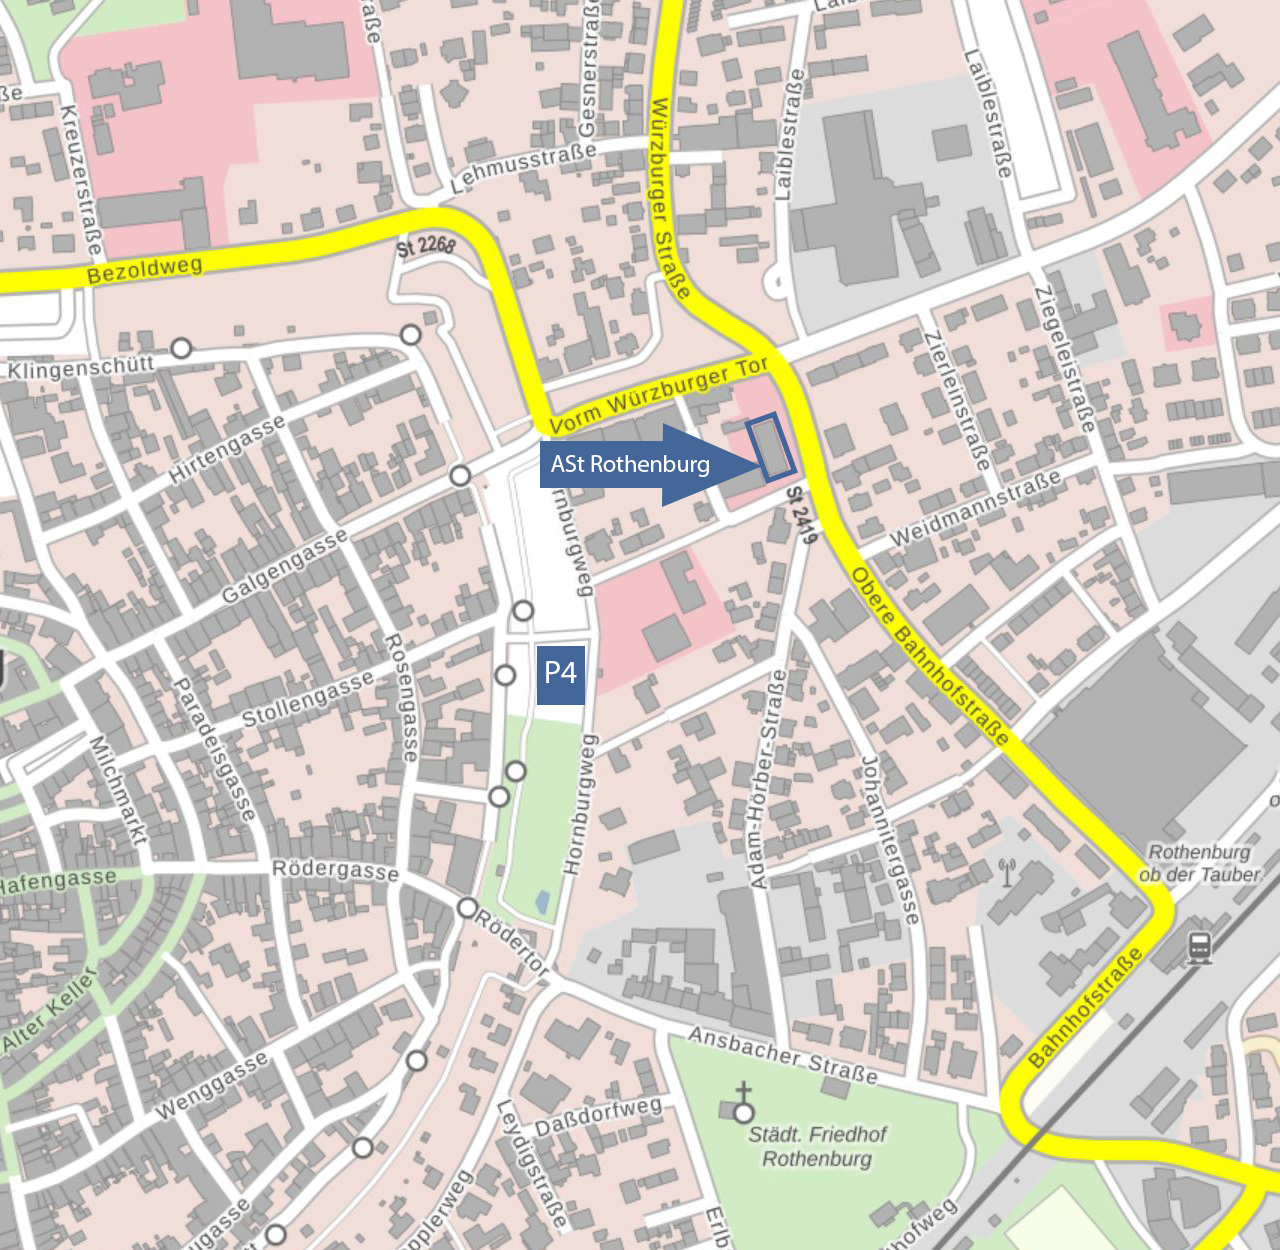  Lageplan Mannstraße mit Markierung der Außenstelle Rothenburg